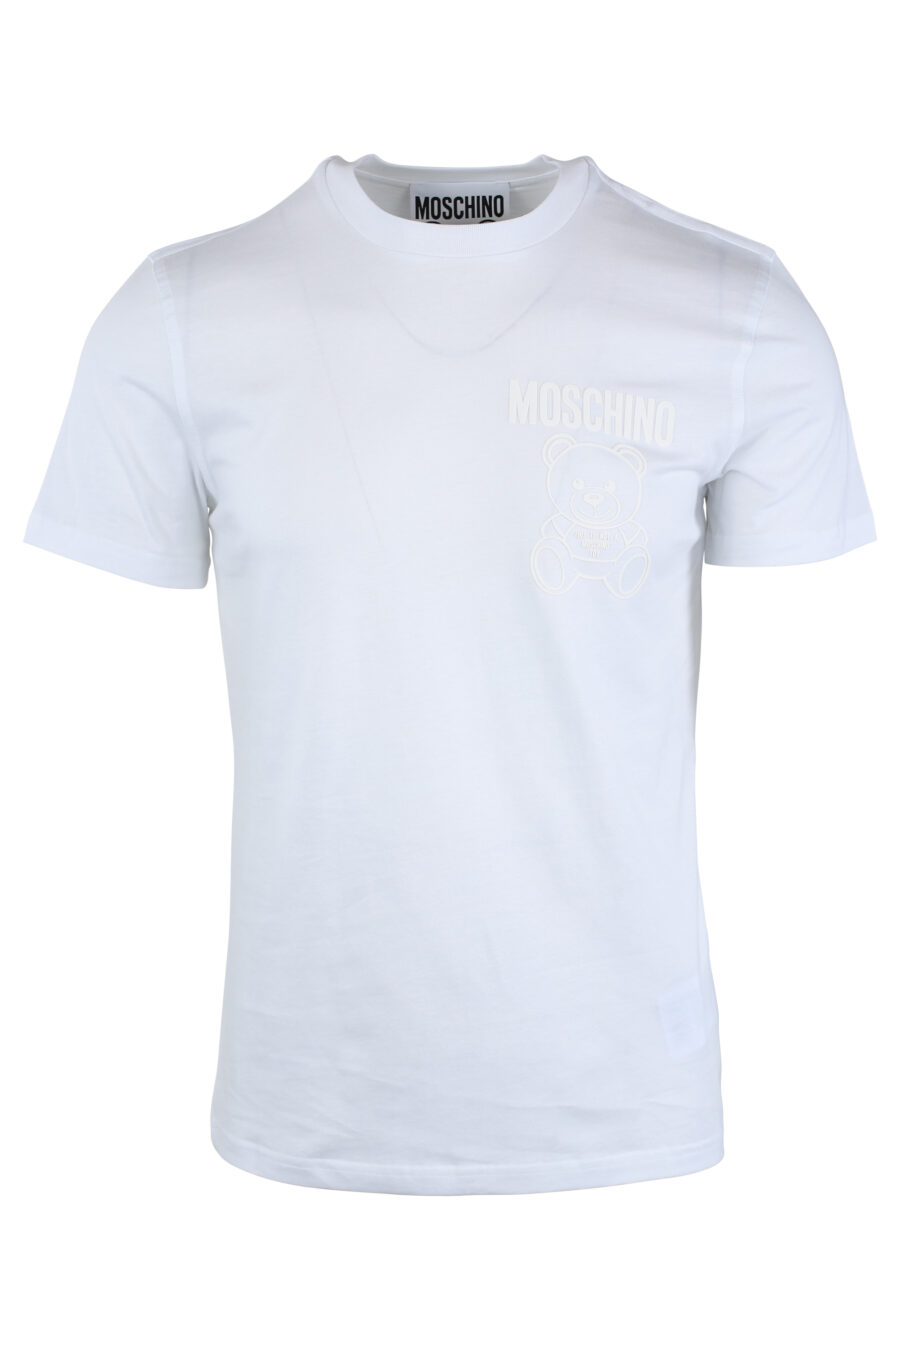 Weißes T-Shirt mit einfarbigem Bären-Minilogo - IMG 1649